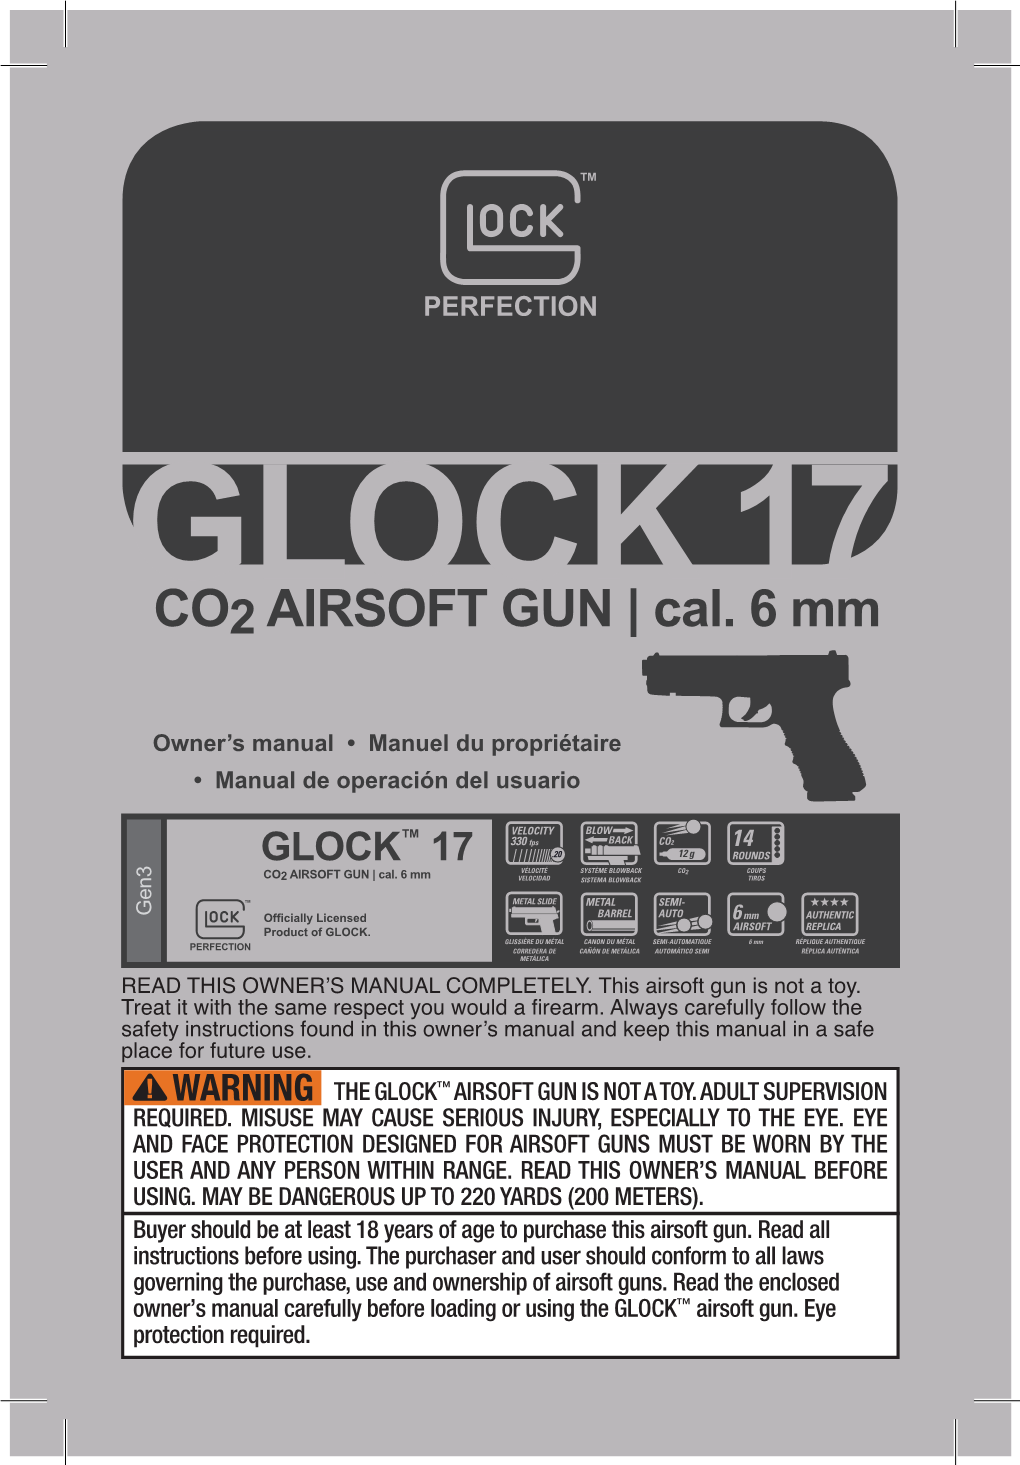 CO2 AIRSOFT GUN | Cal. 6 Mm